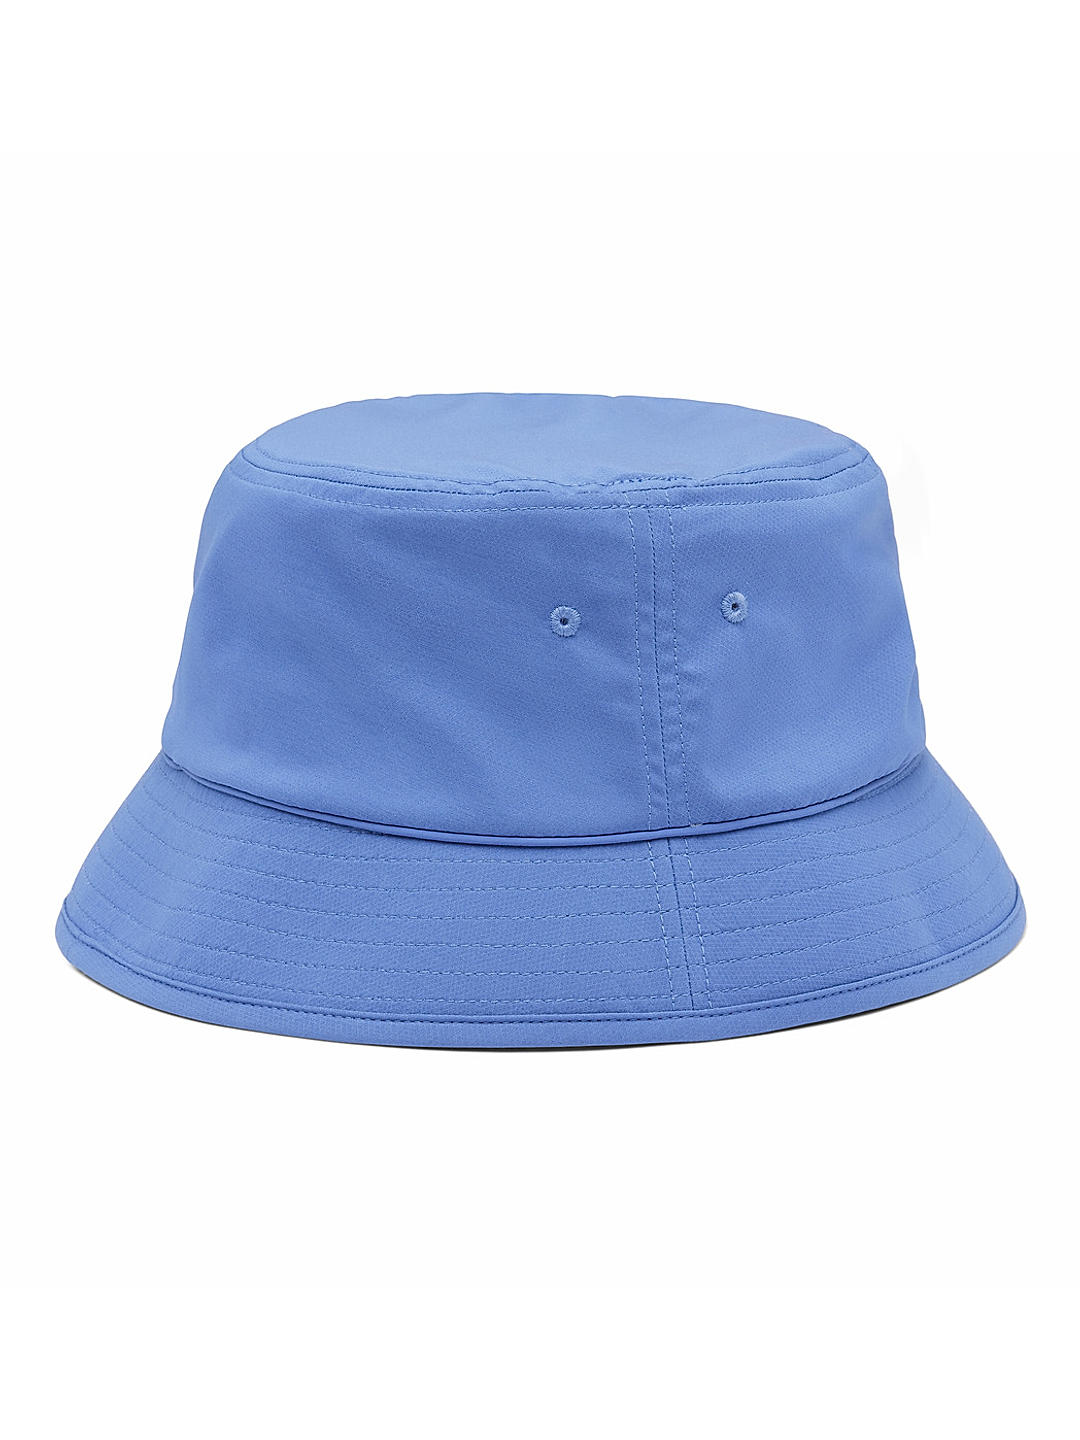 Buy Purple Pine Mountain Bucket Hat Online at Columbia Sportswear